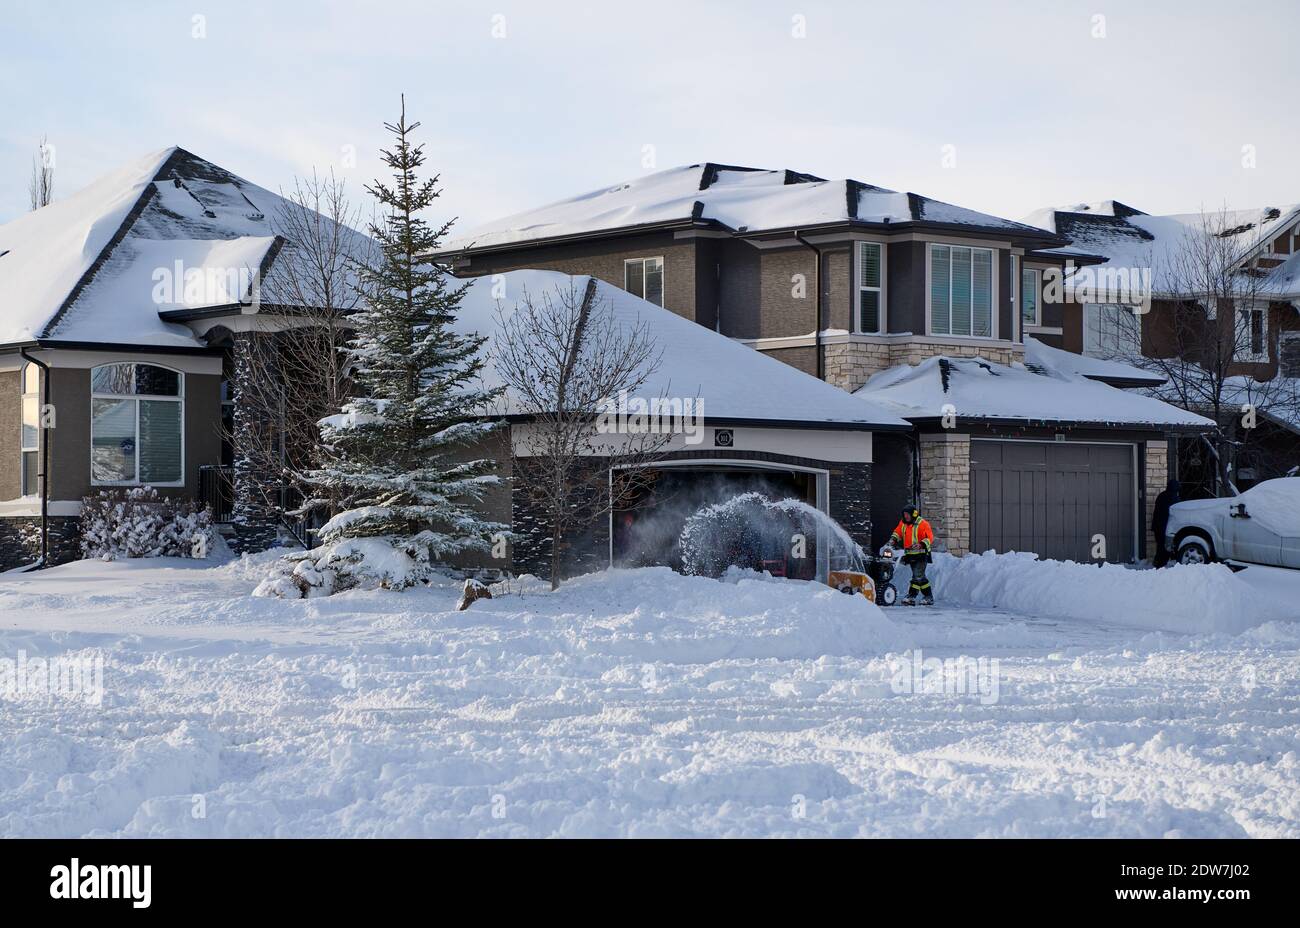 Person, die ein Schneegebläse verwendet, um die Fahrt nach 30 cm Schnee zu räumen, Calgary, Lake Chapala, Alberta, Kanada: 2020-12-22 Stockfoto